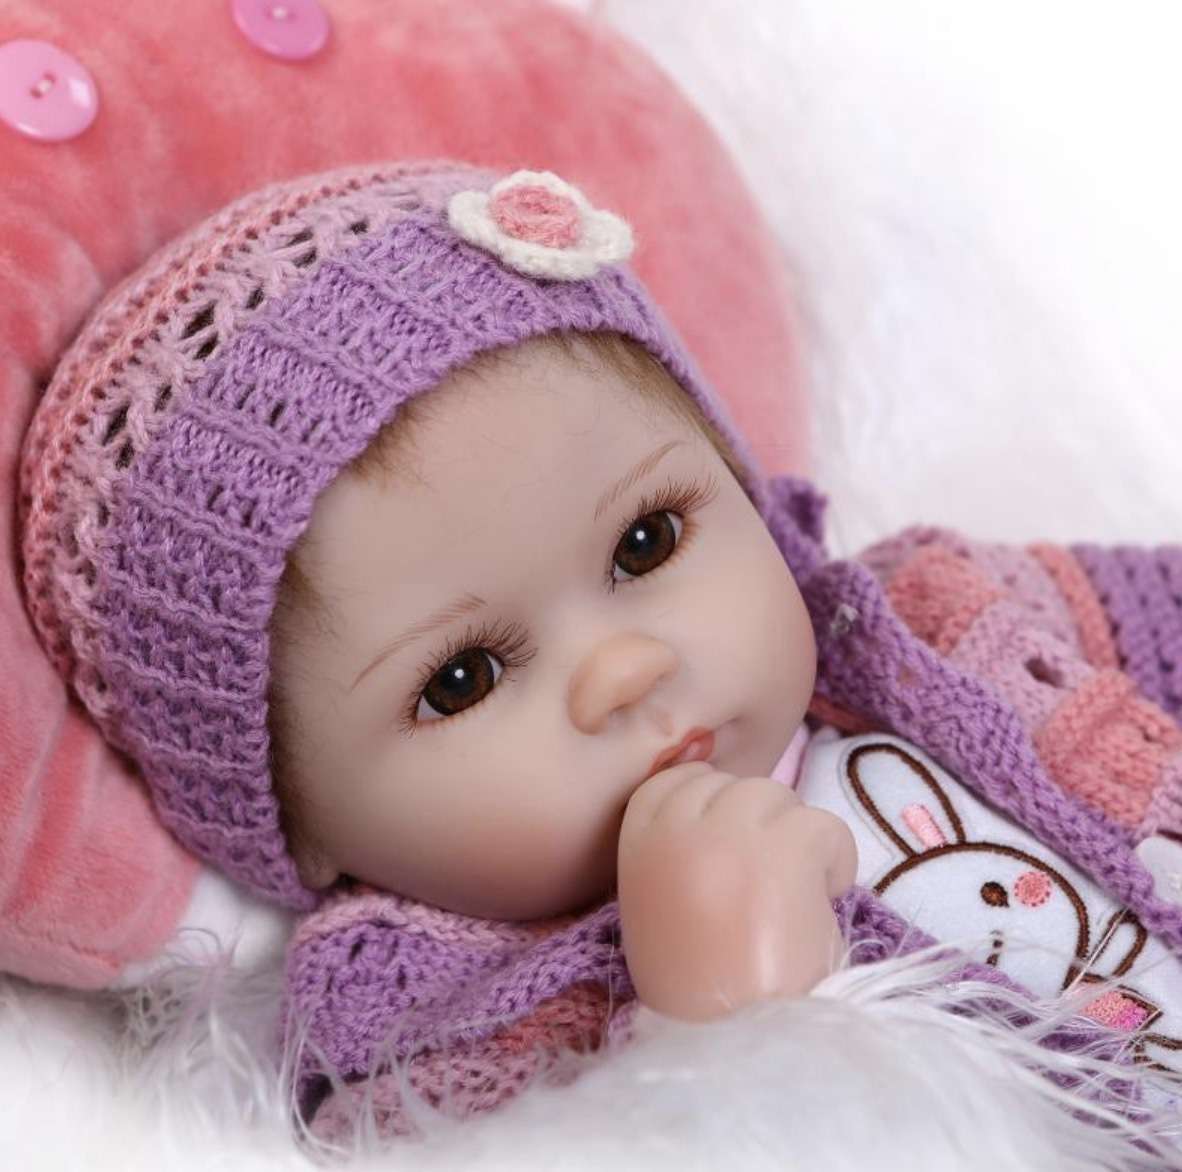 柔らかいリアルなシリコンドール生まれ赤ちゃん人形のおもちゃ40センチビニール 豪華5点セット 就寝時のおもちゃ誕生日ギフト用